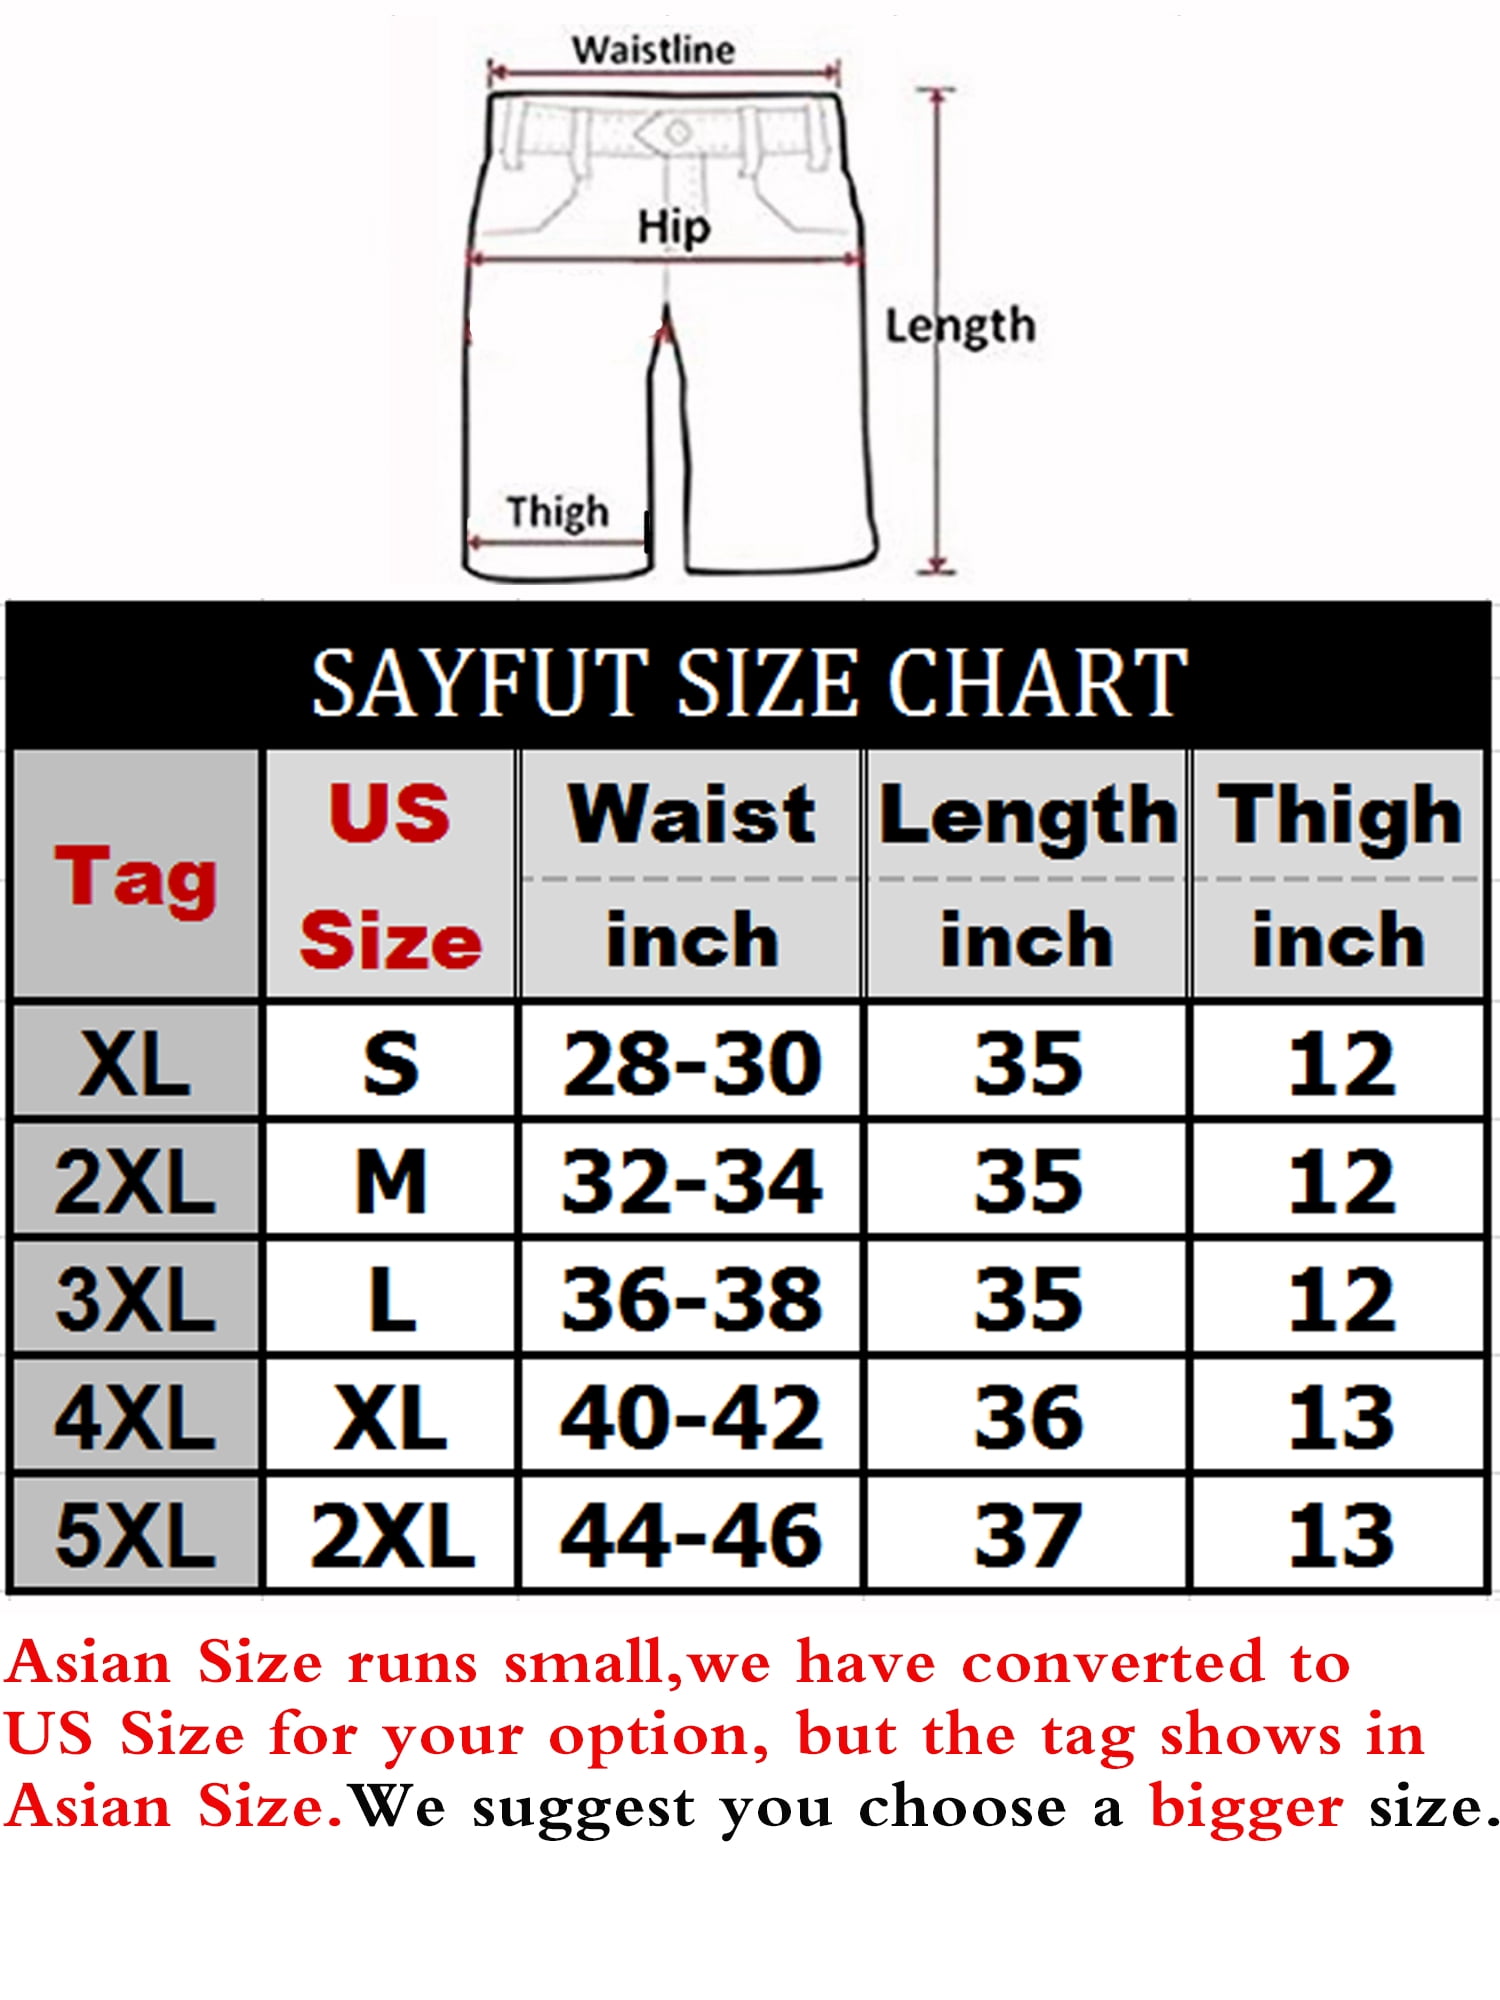 Waist Length Size Chart